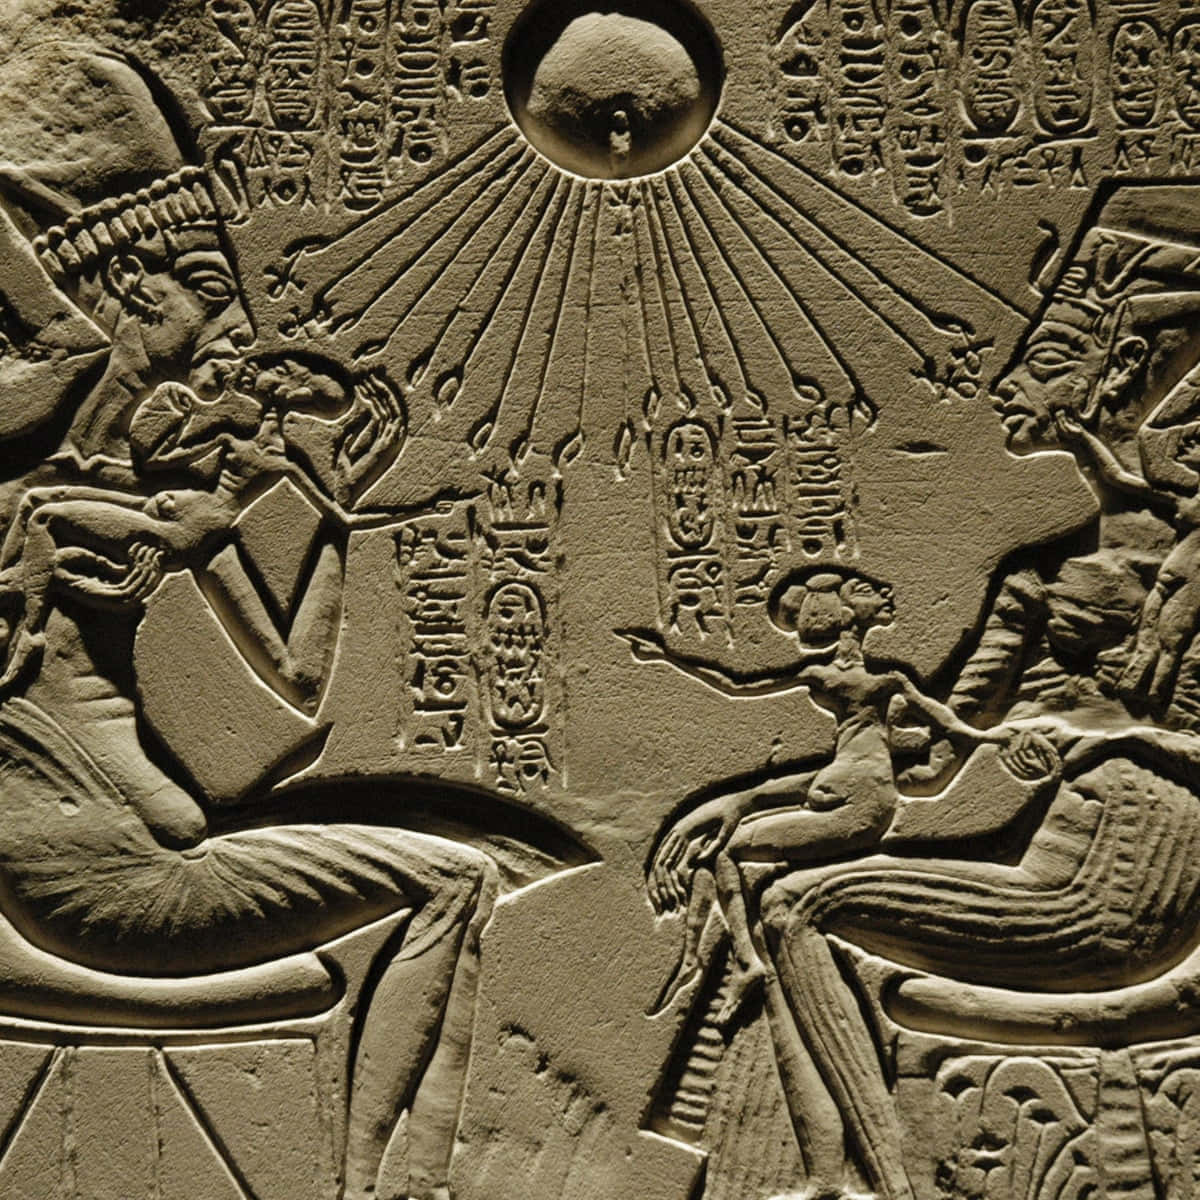 Egitoantigo Imagem 1200 X 1200